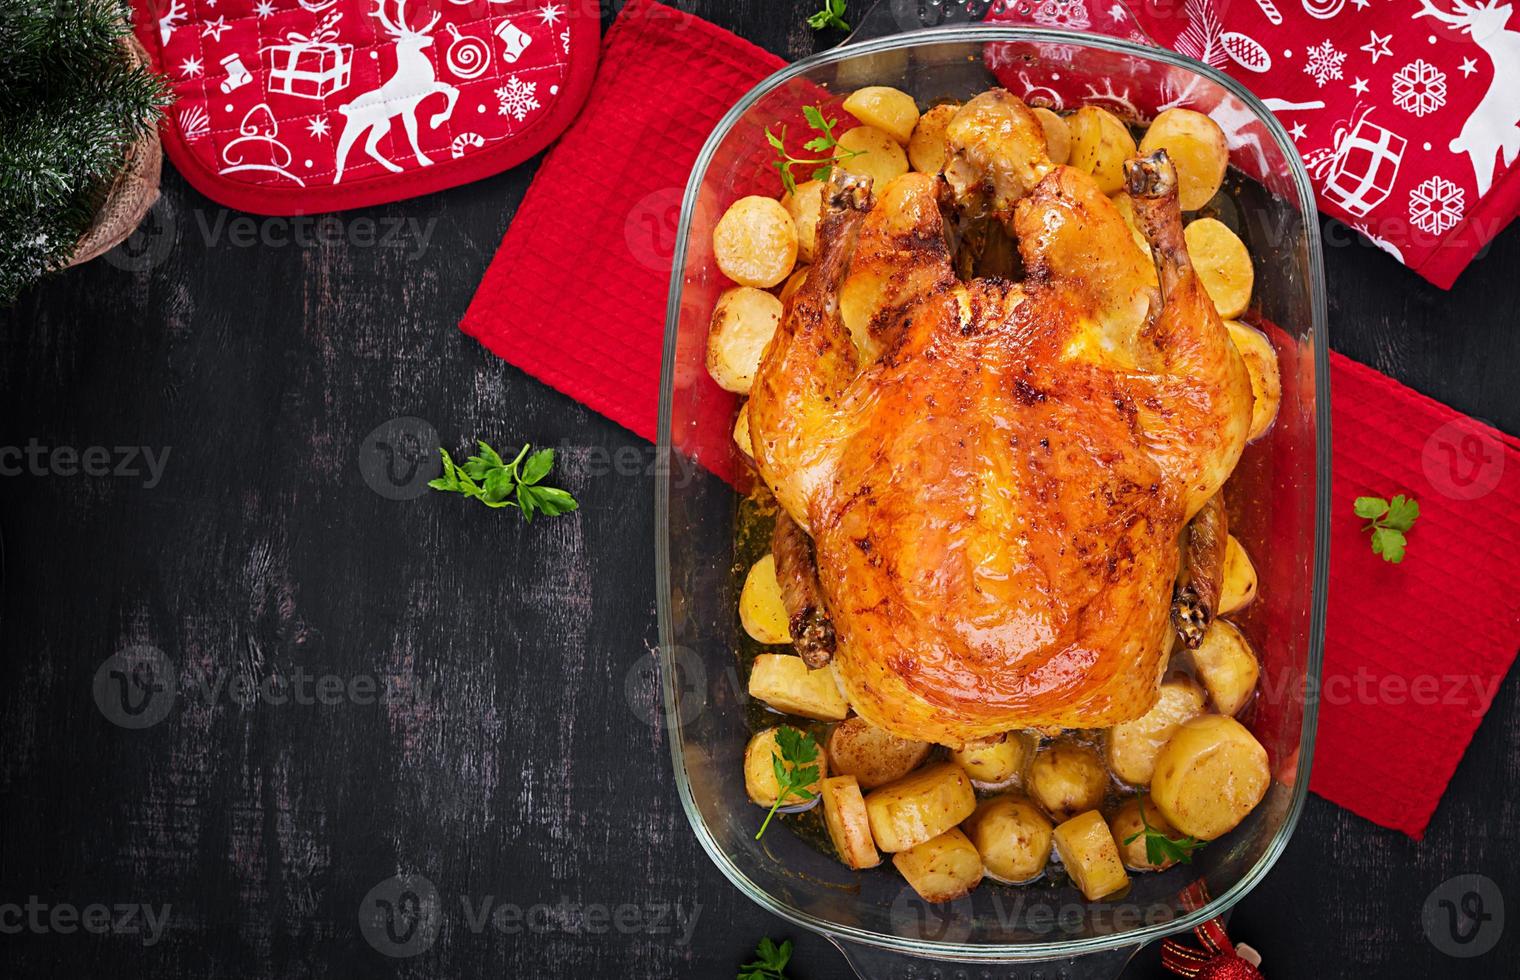 dinde ou poulet au four. la table de noël est servie avec une dinde, décorée de guirlandes lumineuses. poulet frit, table. dîner de Noël. vue de dessus, dessus photo